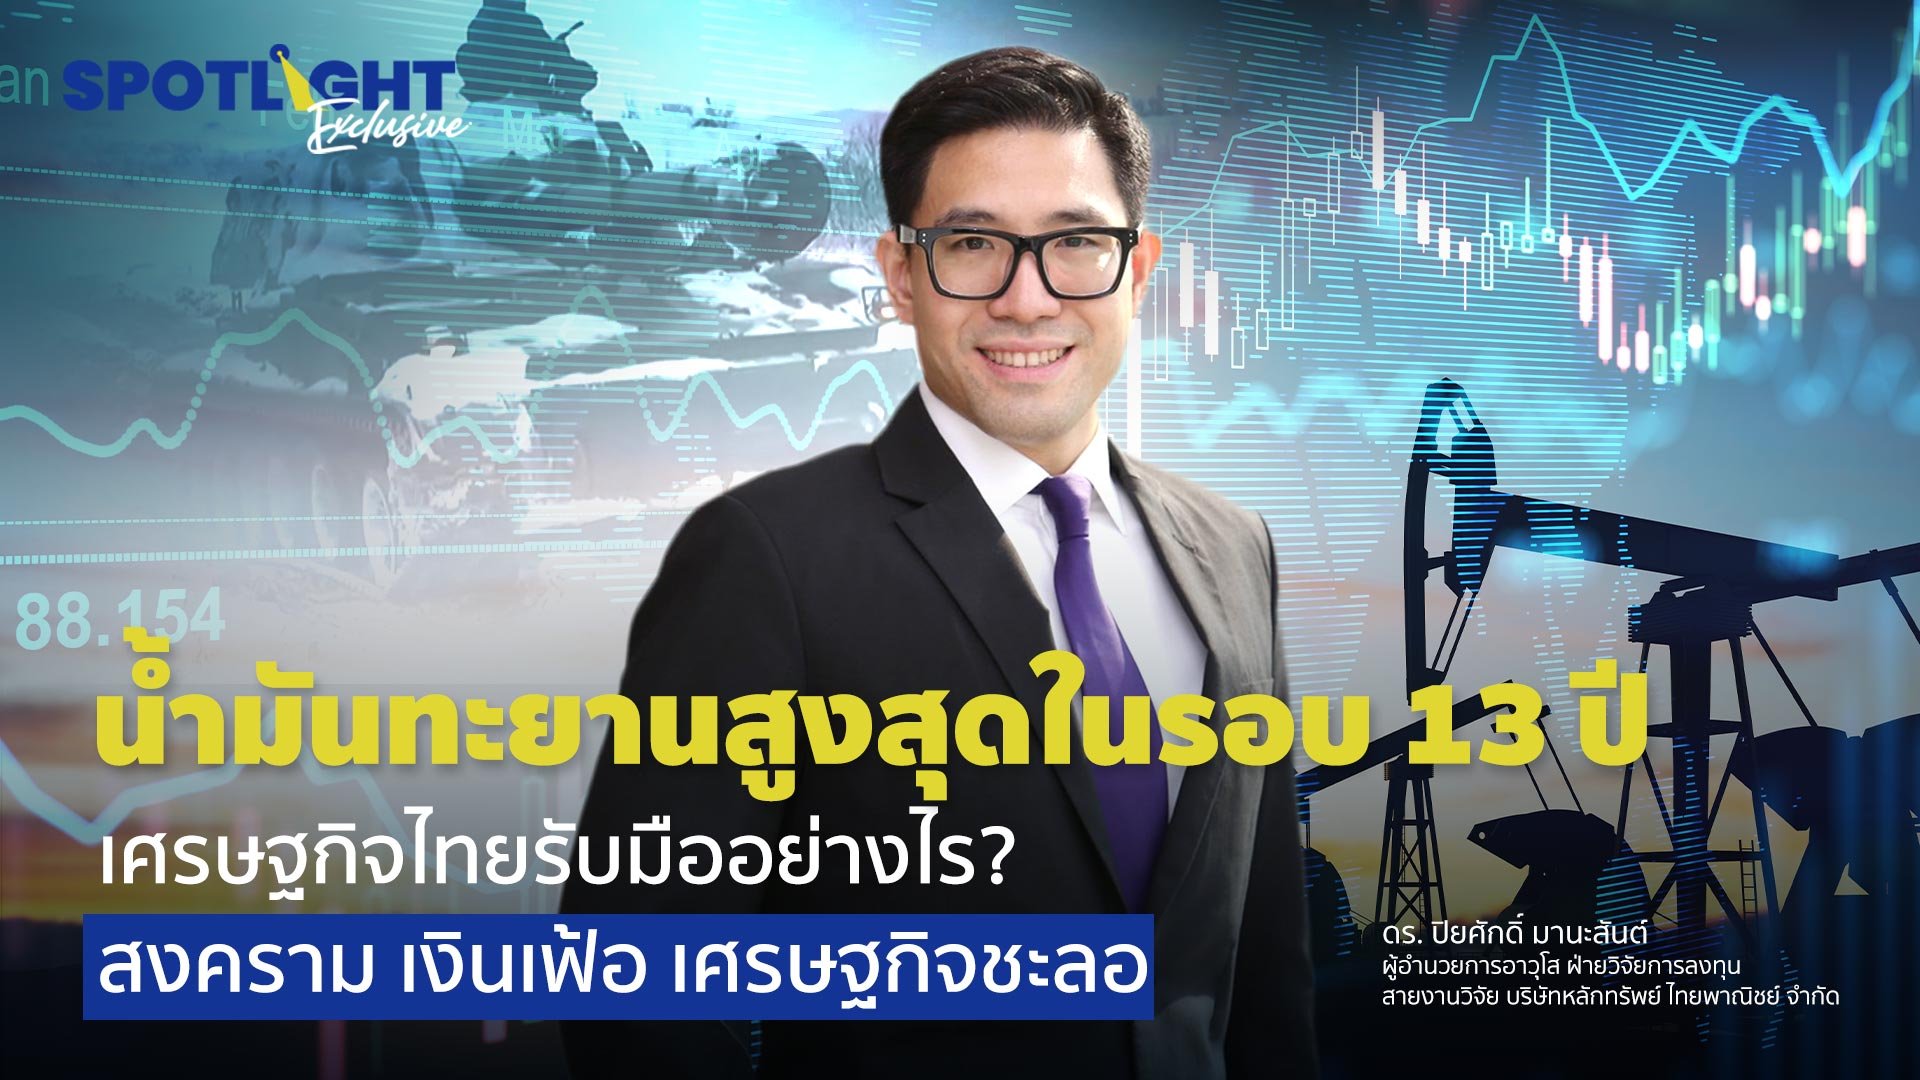 น้ำมันทะยานสูงสุดในรอบ 13 ปี เศรษฐกิจไทยรับมืออย่างไร?  สงคราม เงินเฟ้อ เศรษฐกิจชะลอ | Spotlight | 7 มี.ค. 65 | AMARIN TVHD34